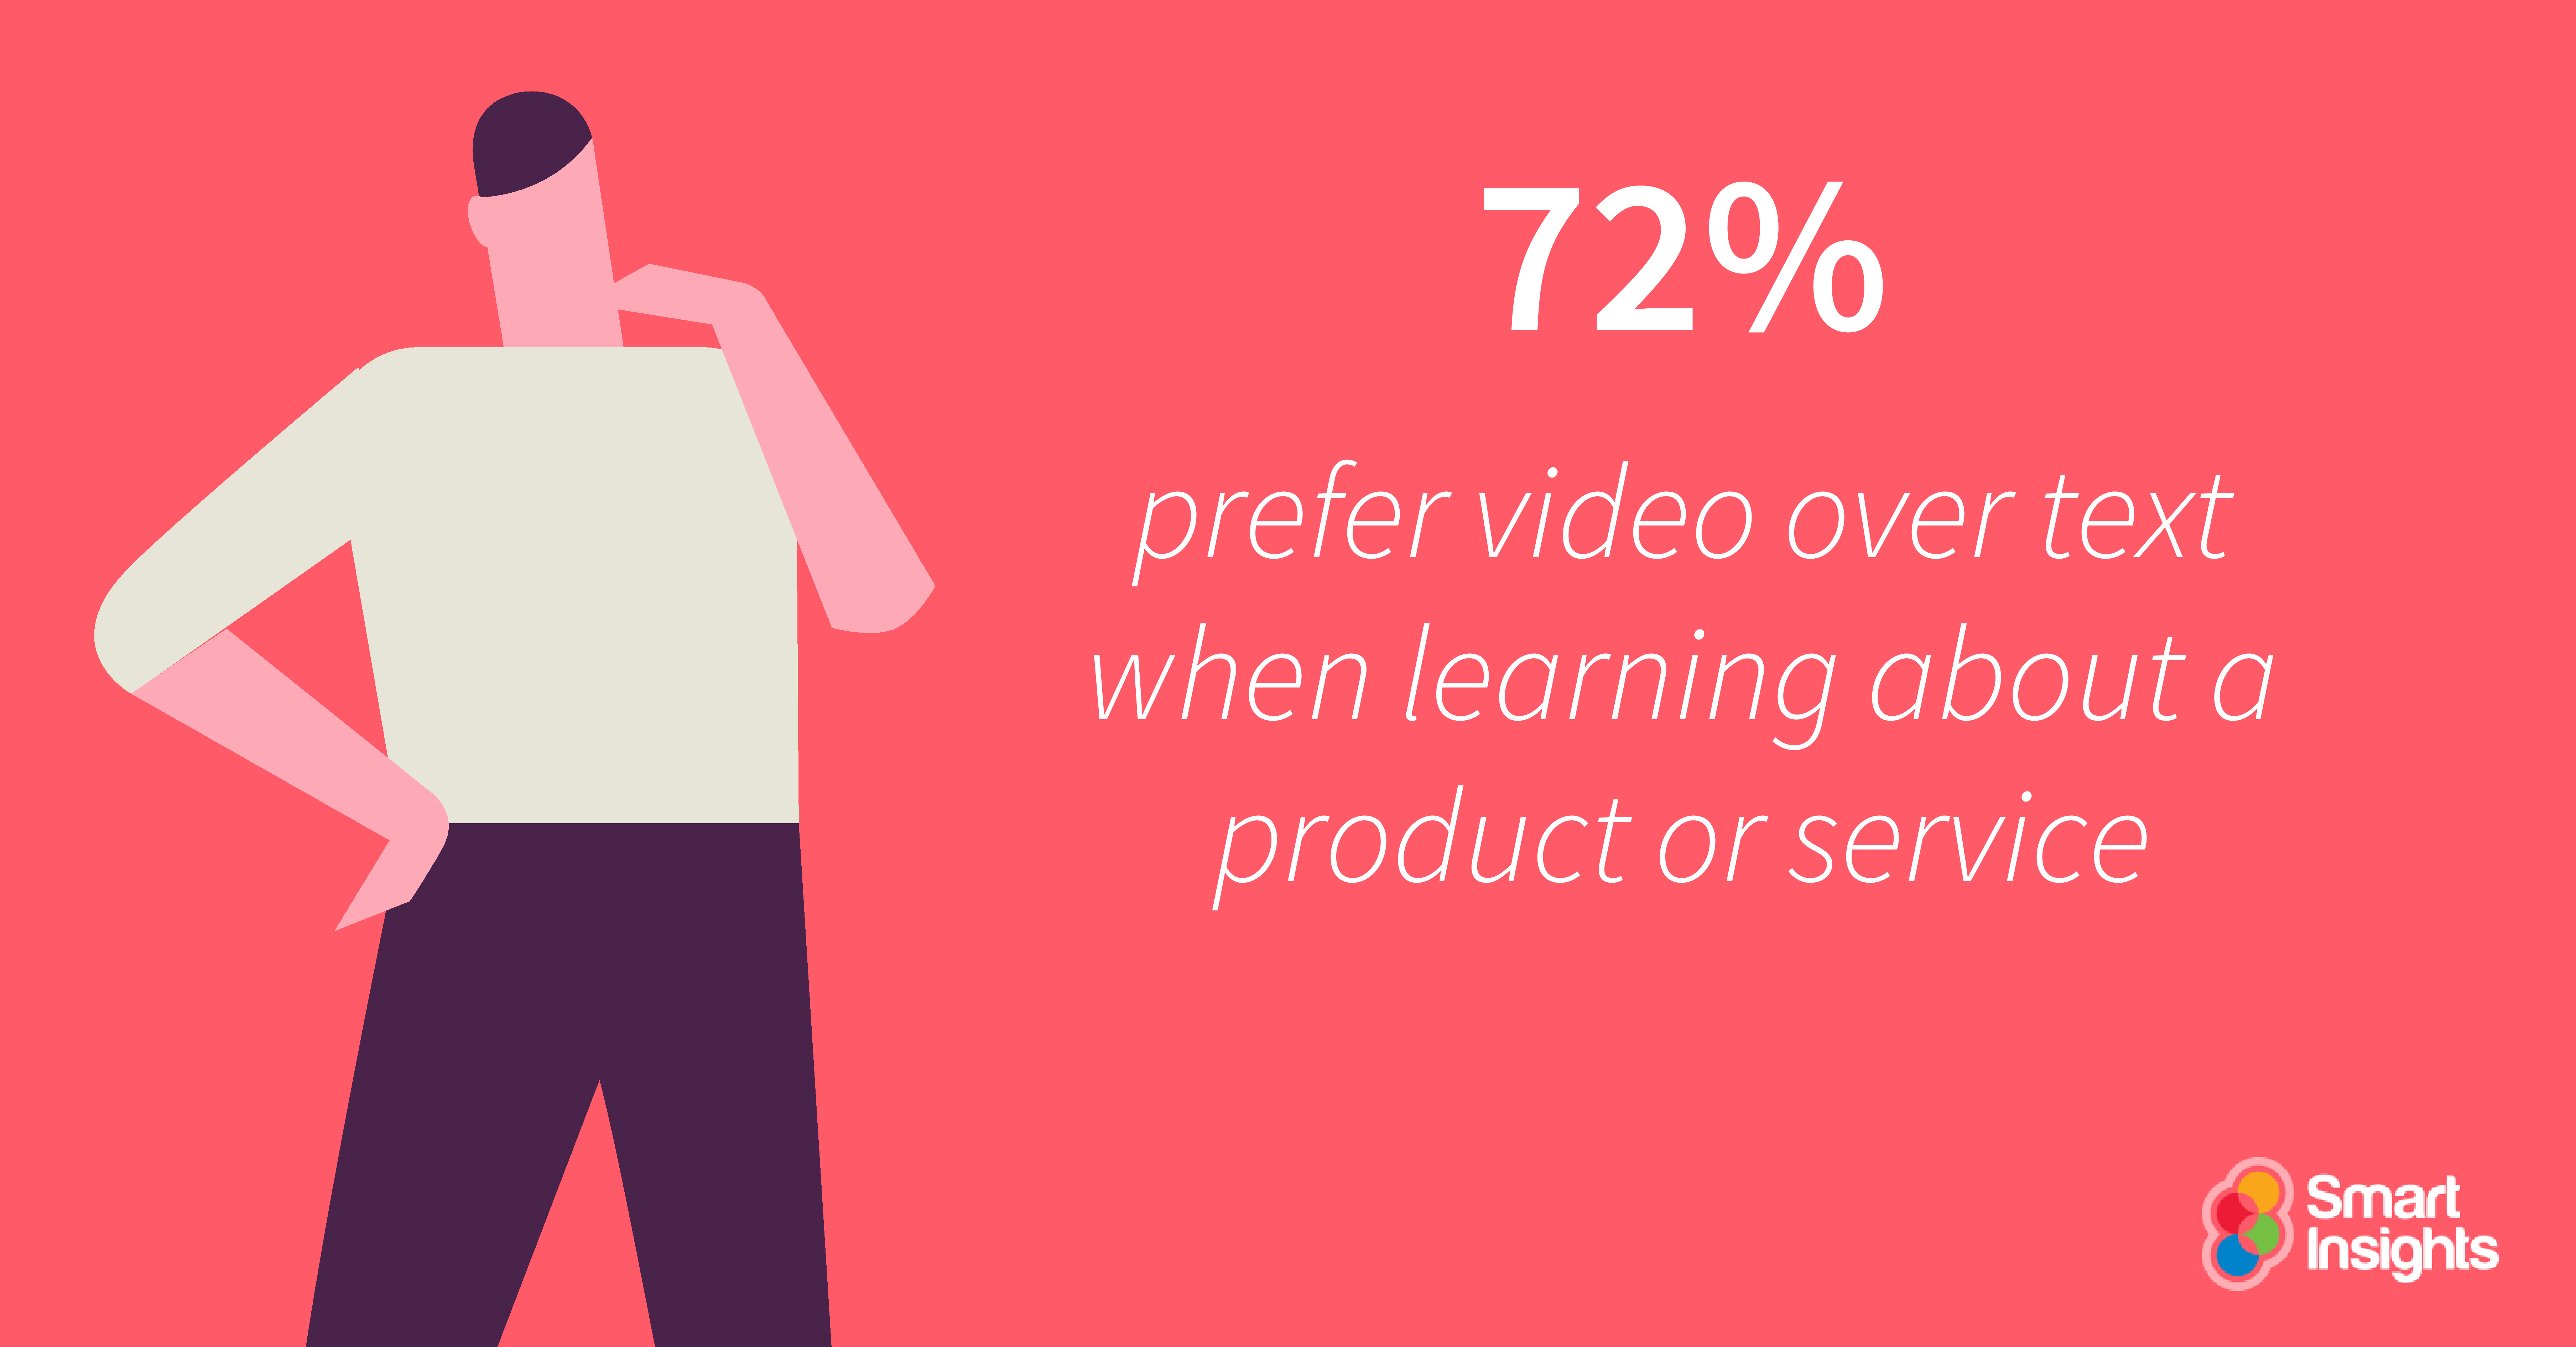 Il 72% preferisce il video rispetto al testo quando si apprende un prodotto o un servizio